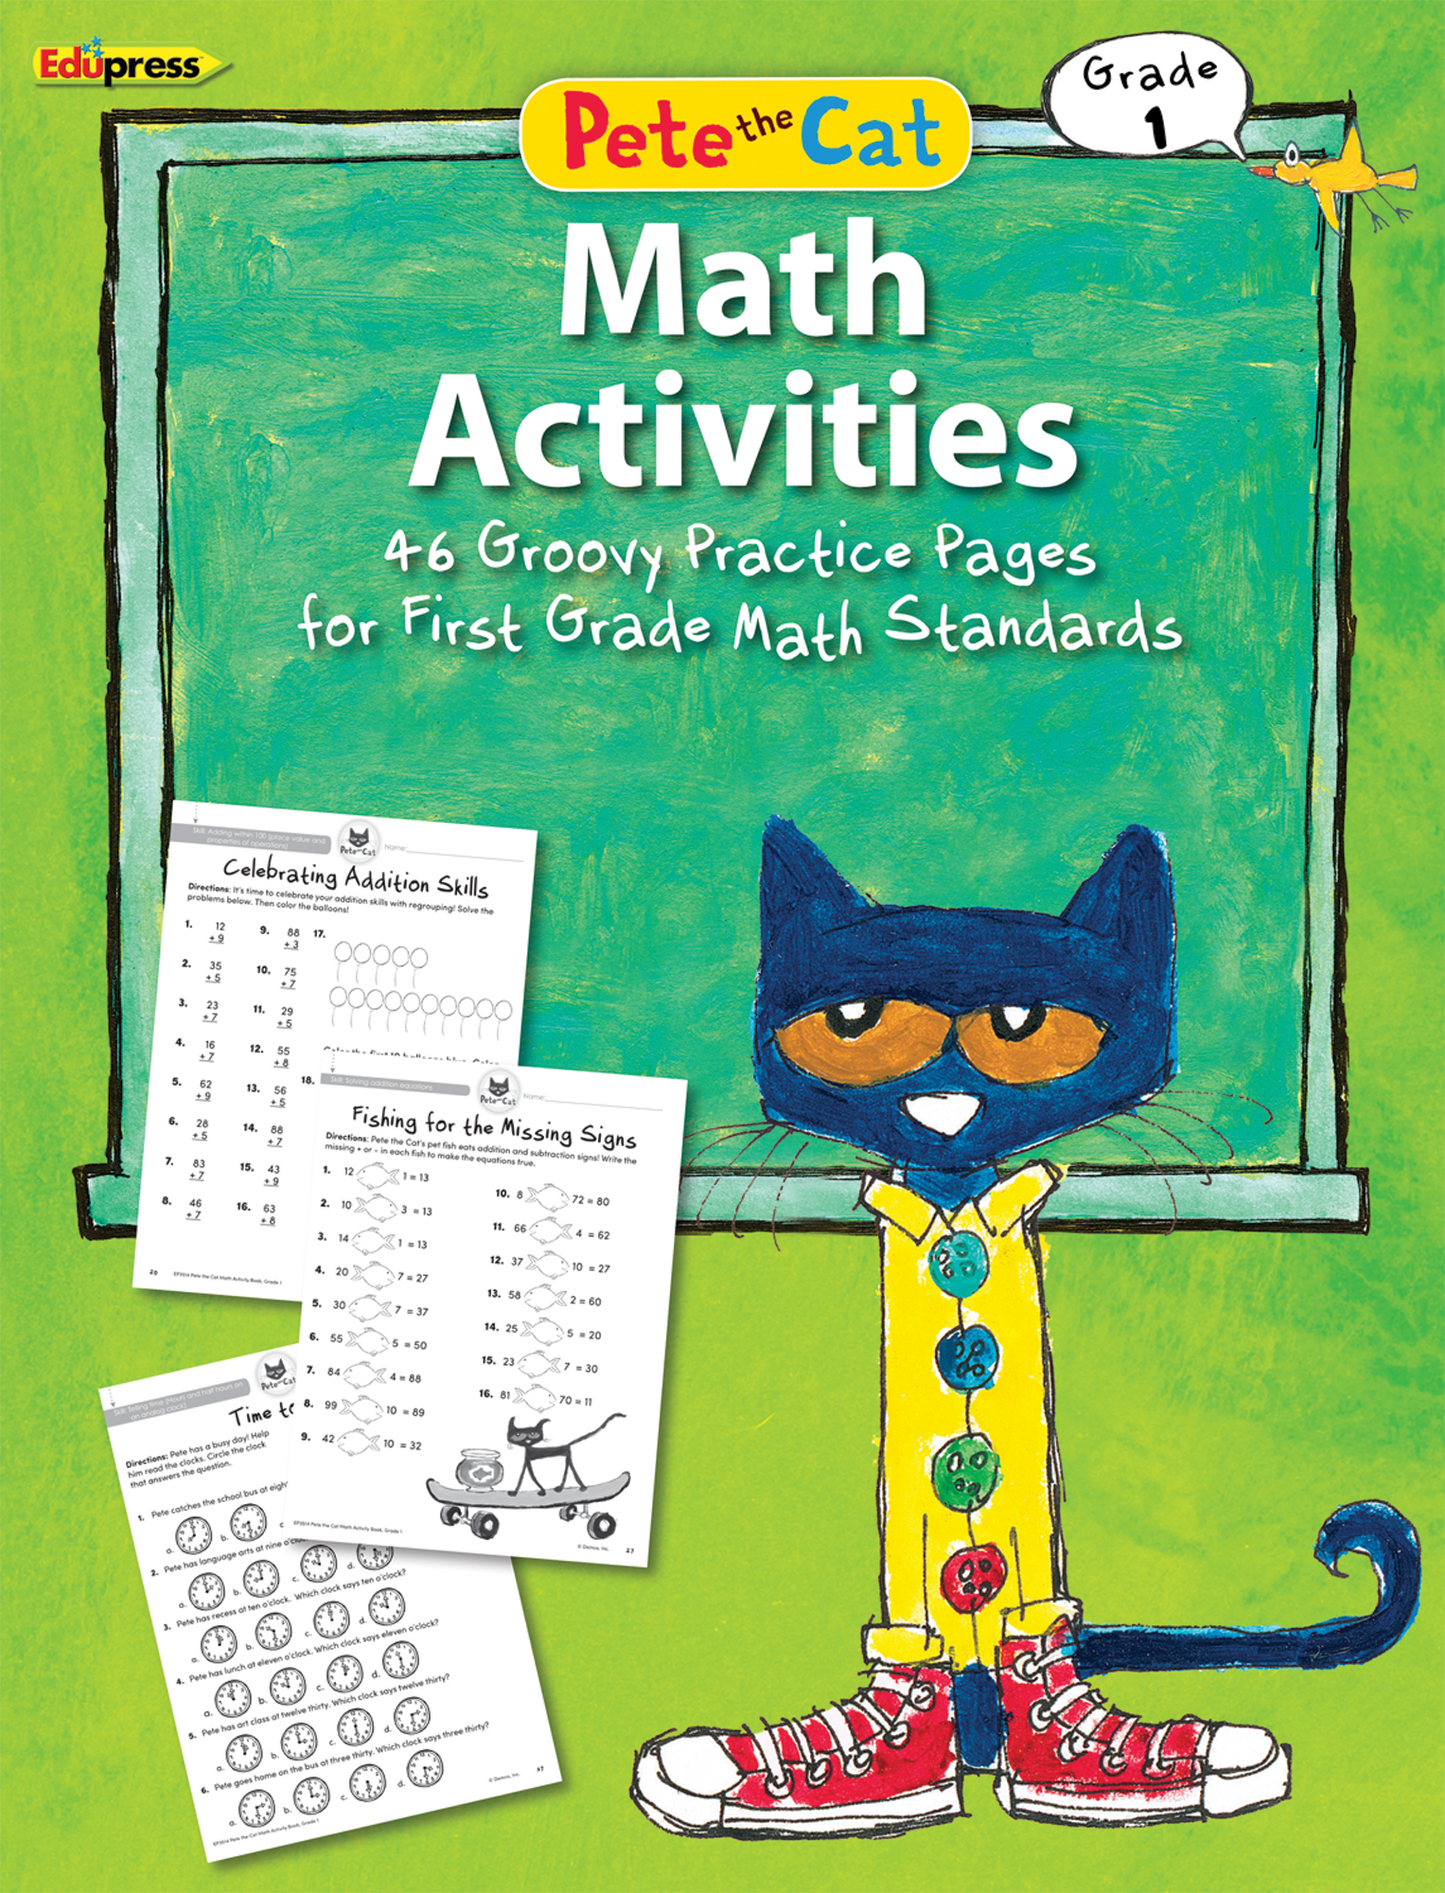 Pete the Cat® Math Activities (Gr. 1)